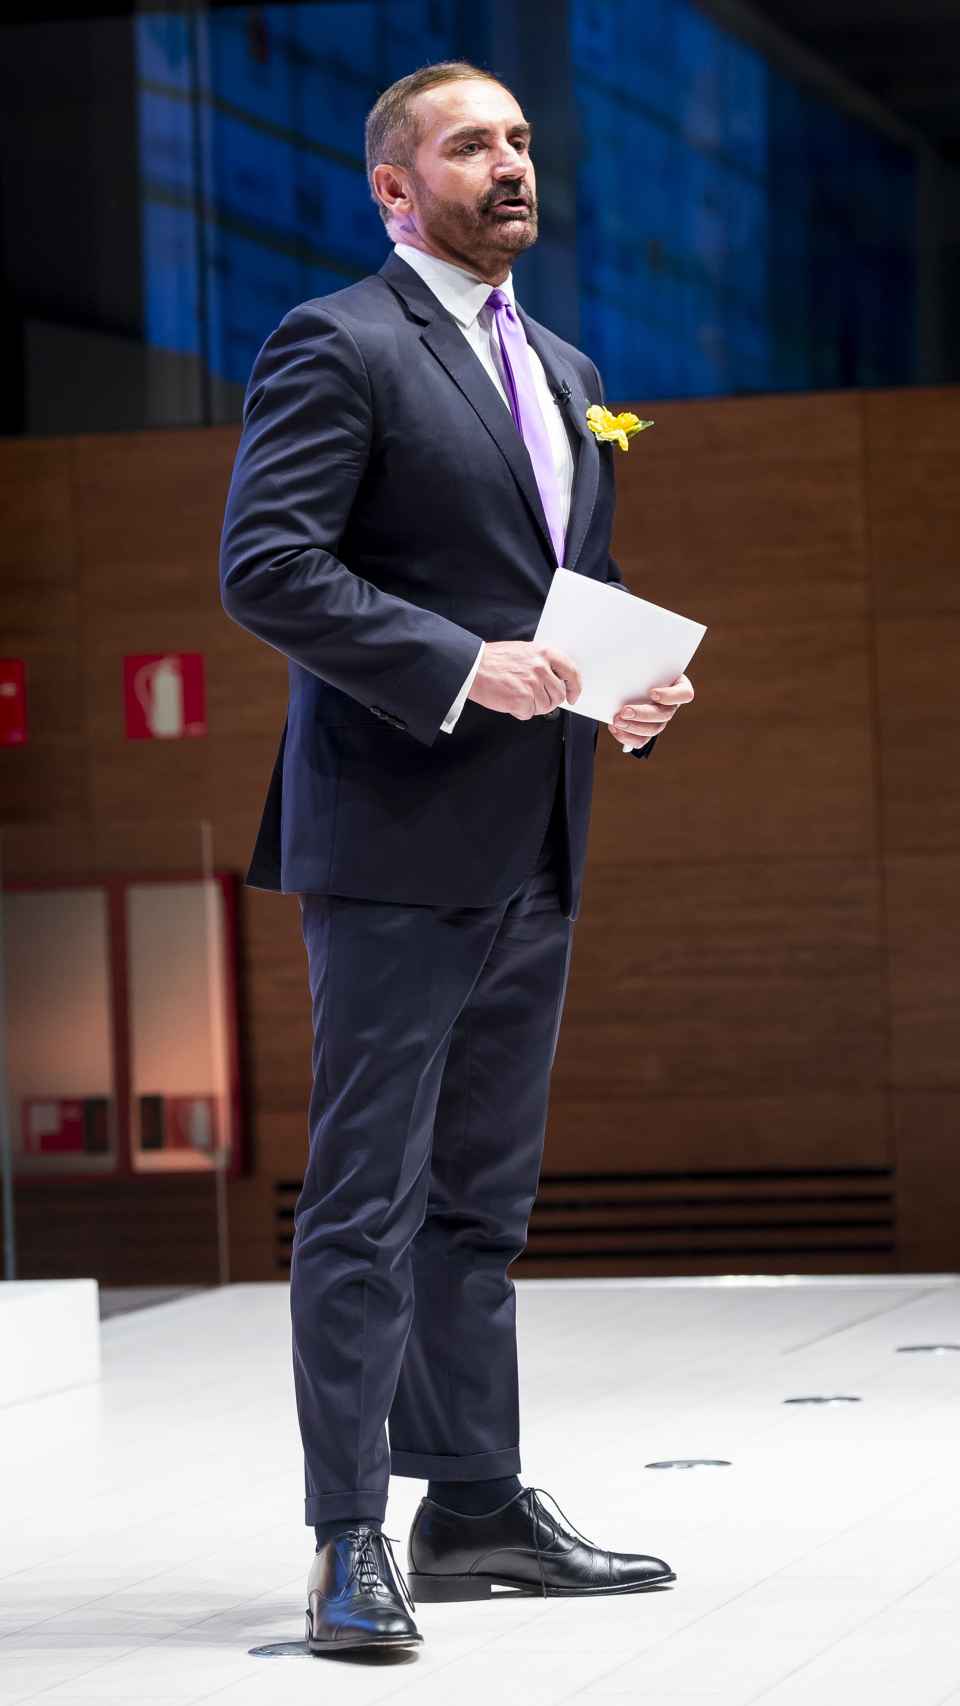 Euprepio Padula en una aparición pública en Madrid en octubre de 2018, donde actuó como presentador.